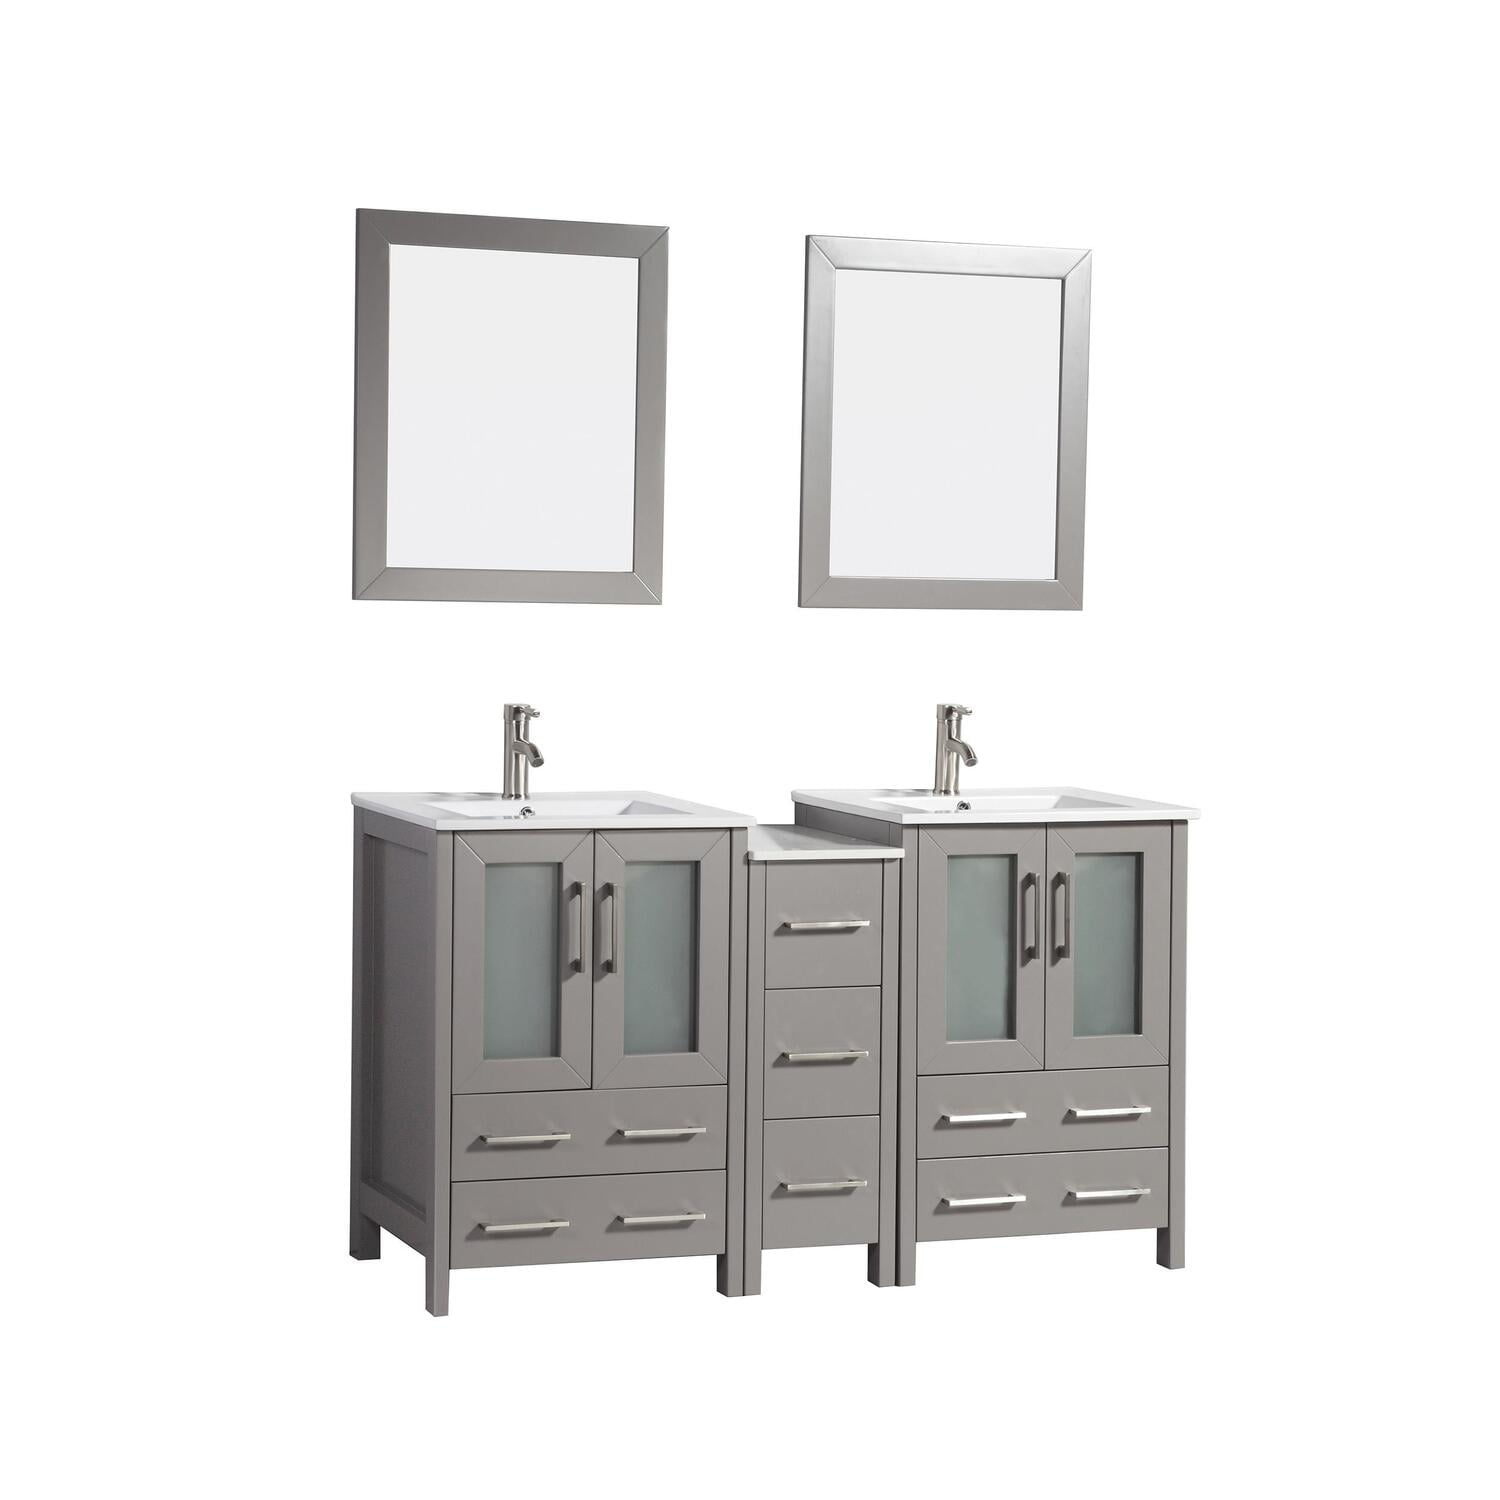 Vanity Art 60 Inch Double Sink Bathroom, 60 Inch Bathroom Vanity Top With Double Sink